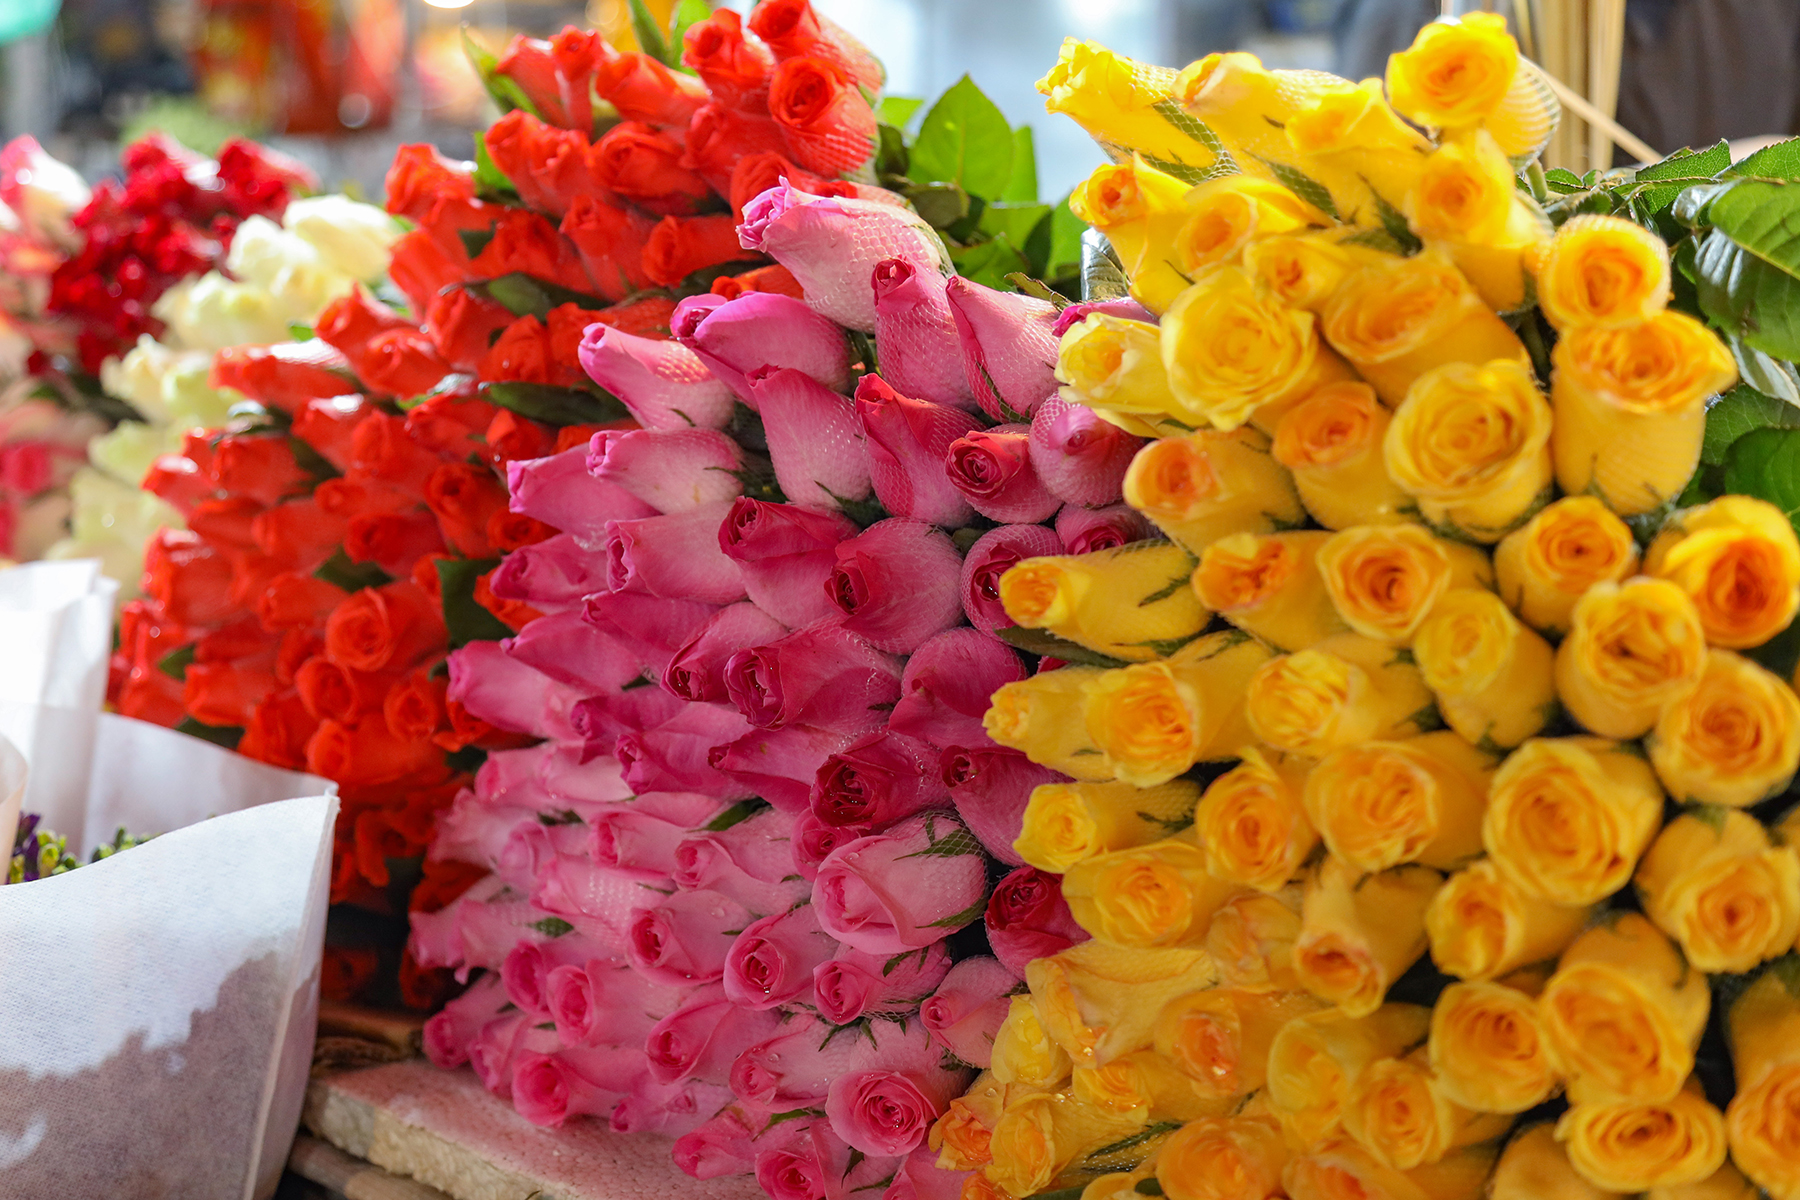 Hoa hồng tăng gấp 3 lần, chợ hoa lớn nhất Hà Nội đông nghịt người trước 8.3 - Ảnh 2.